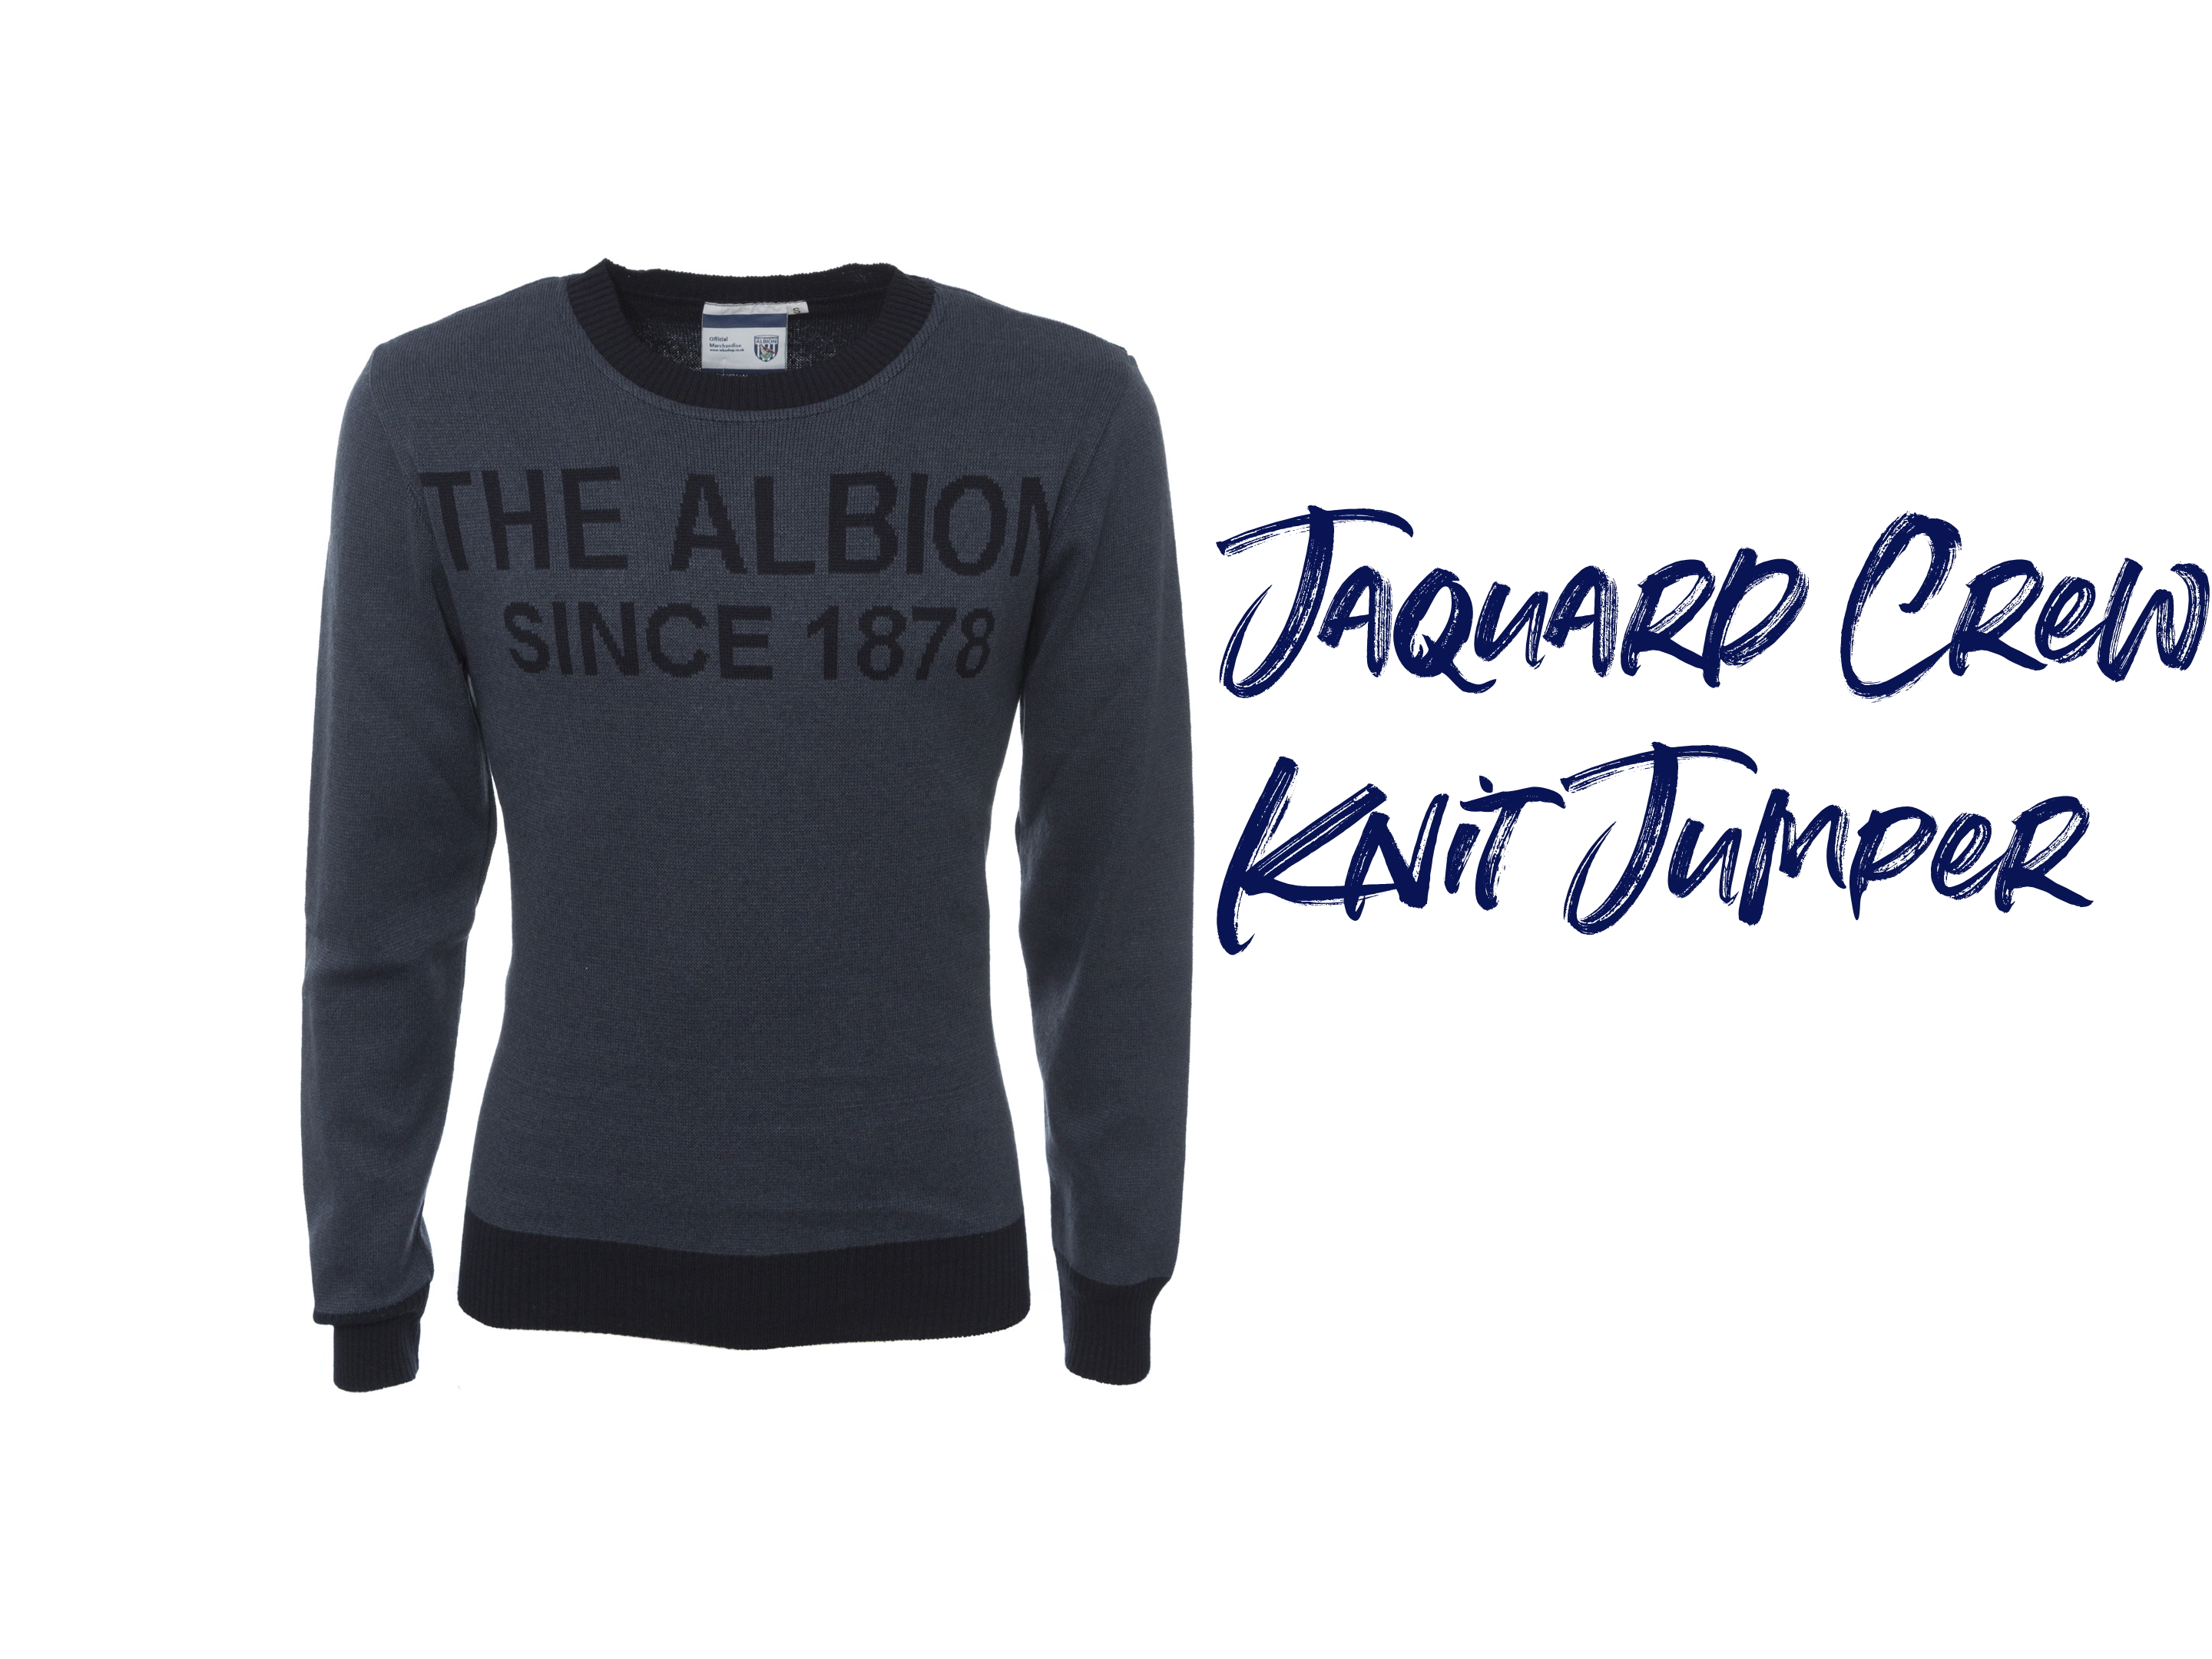 Jaquard Crew Knit Jumper